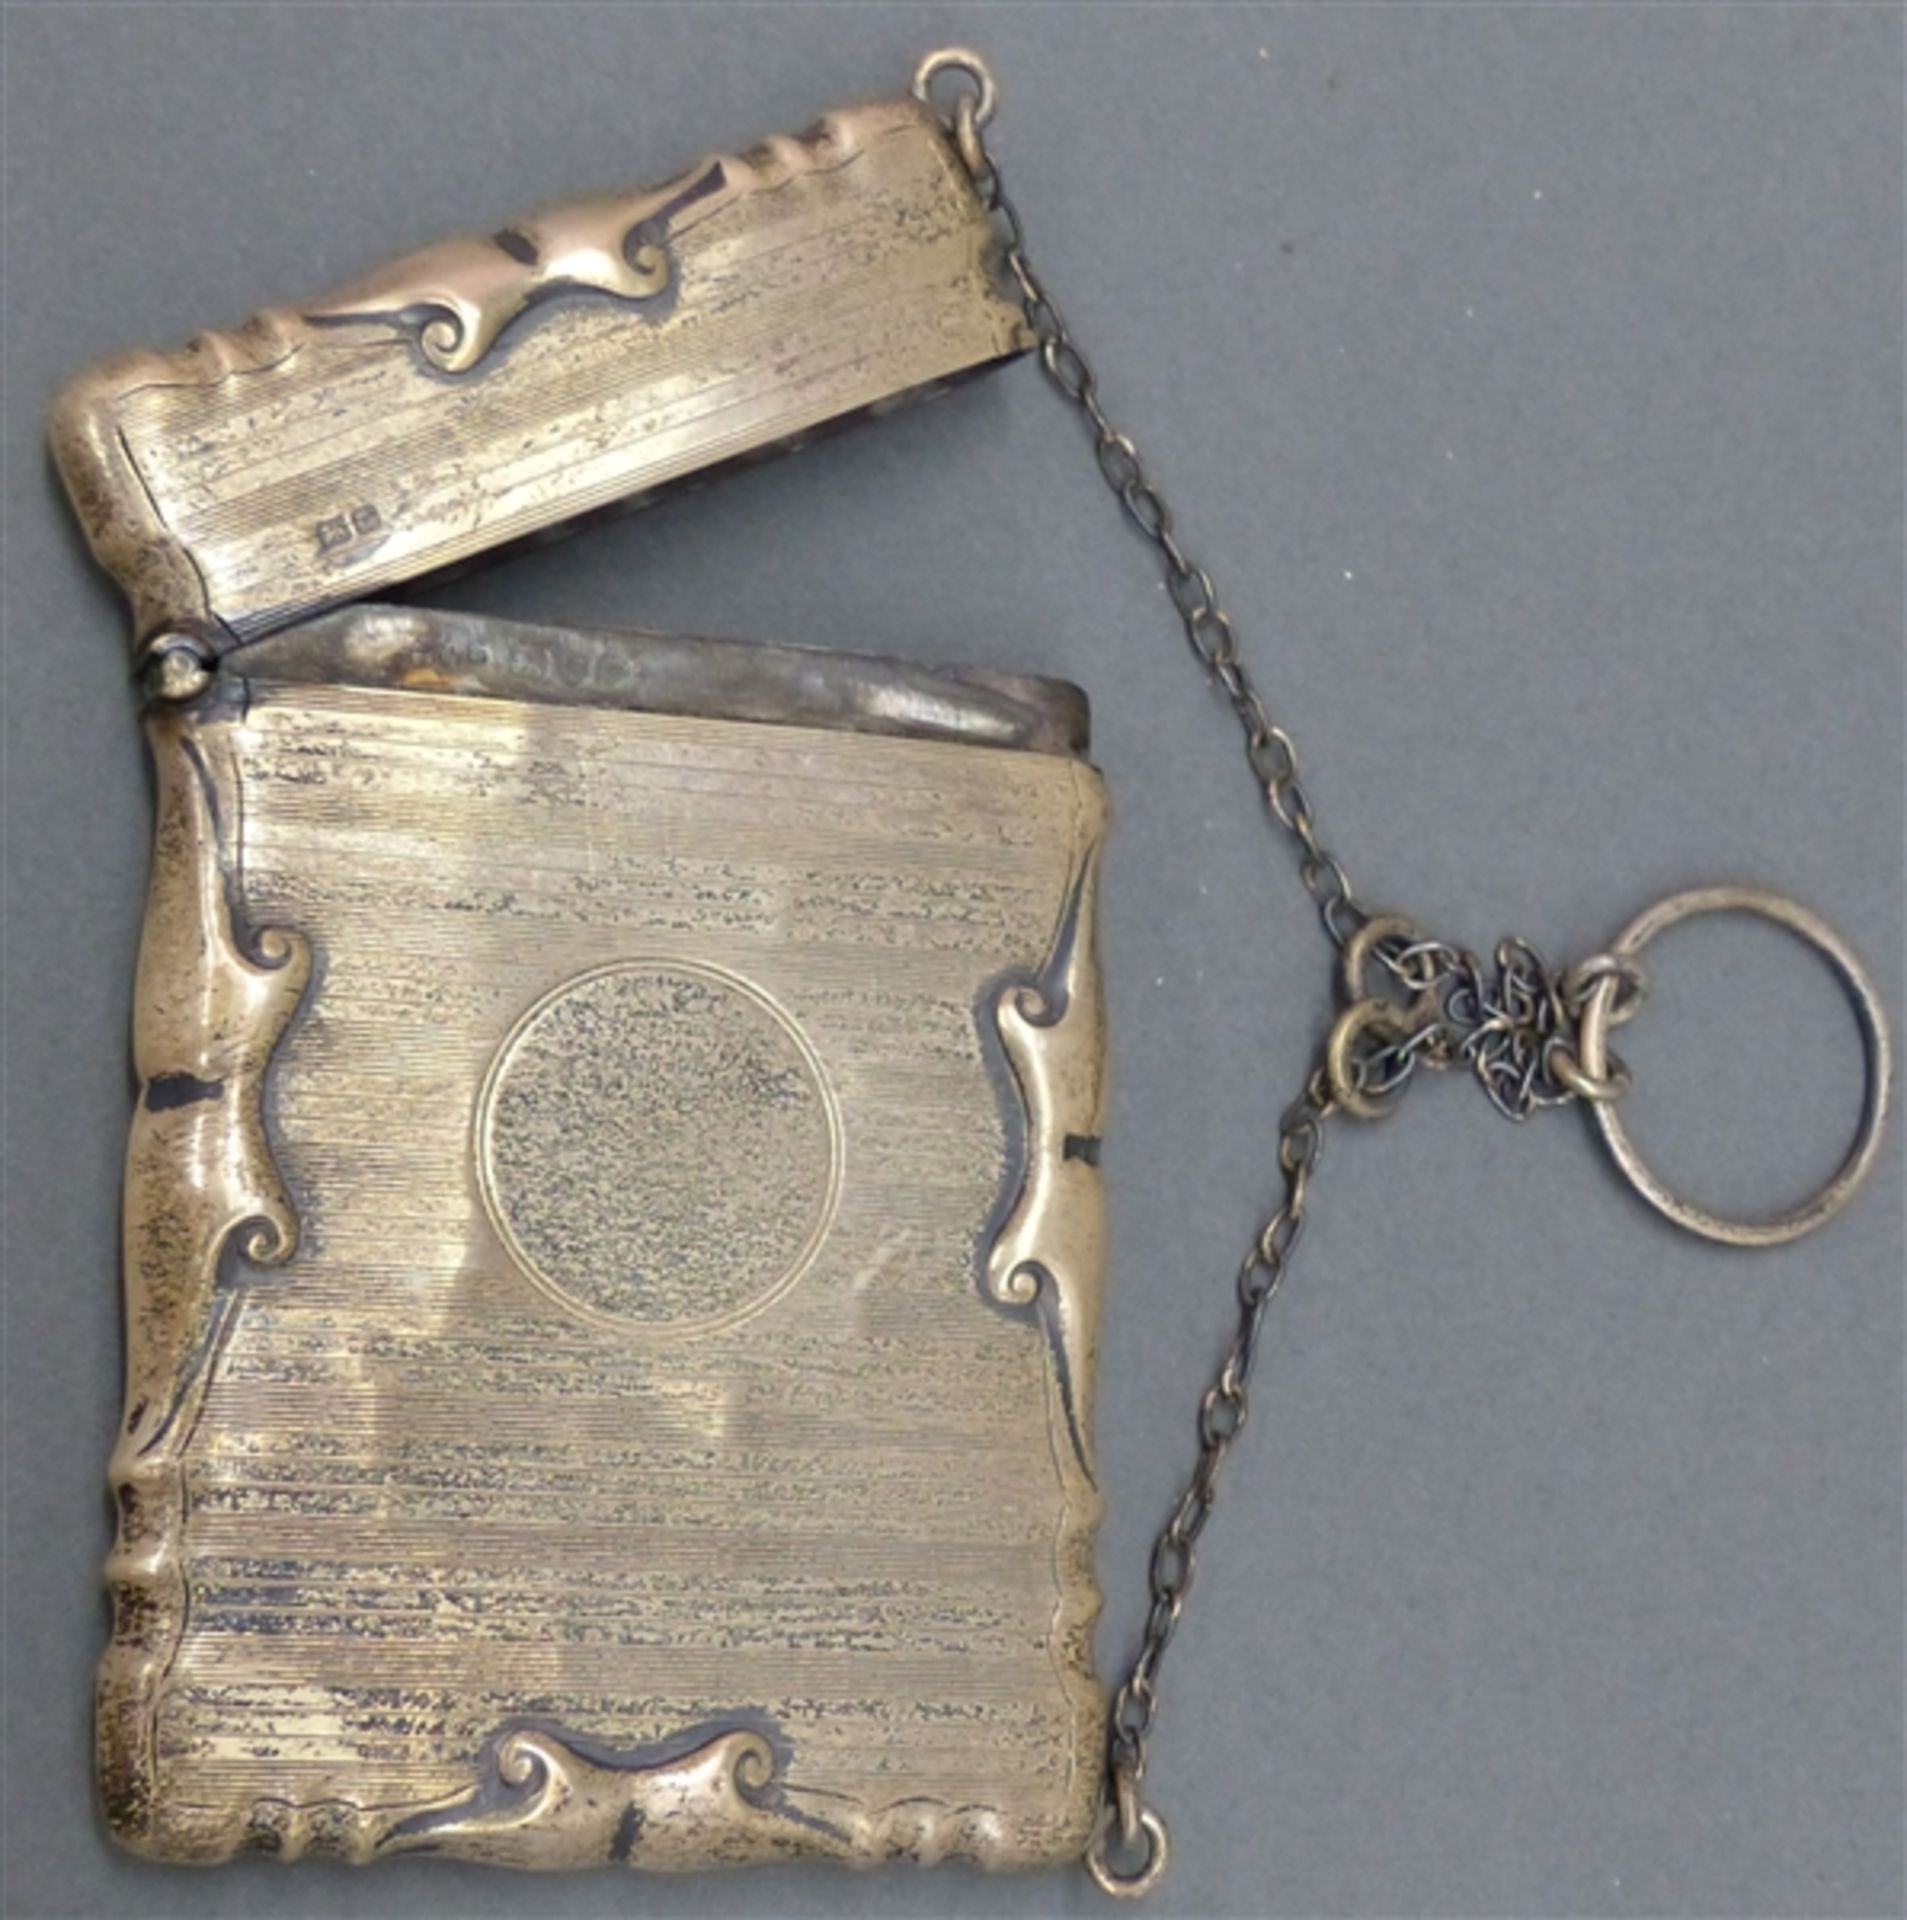 Silberetui England, graviert, Reliefdekor, punziert, mit Anhängekette, ca. 75 g schwer, h 9,5 cm,